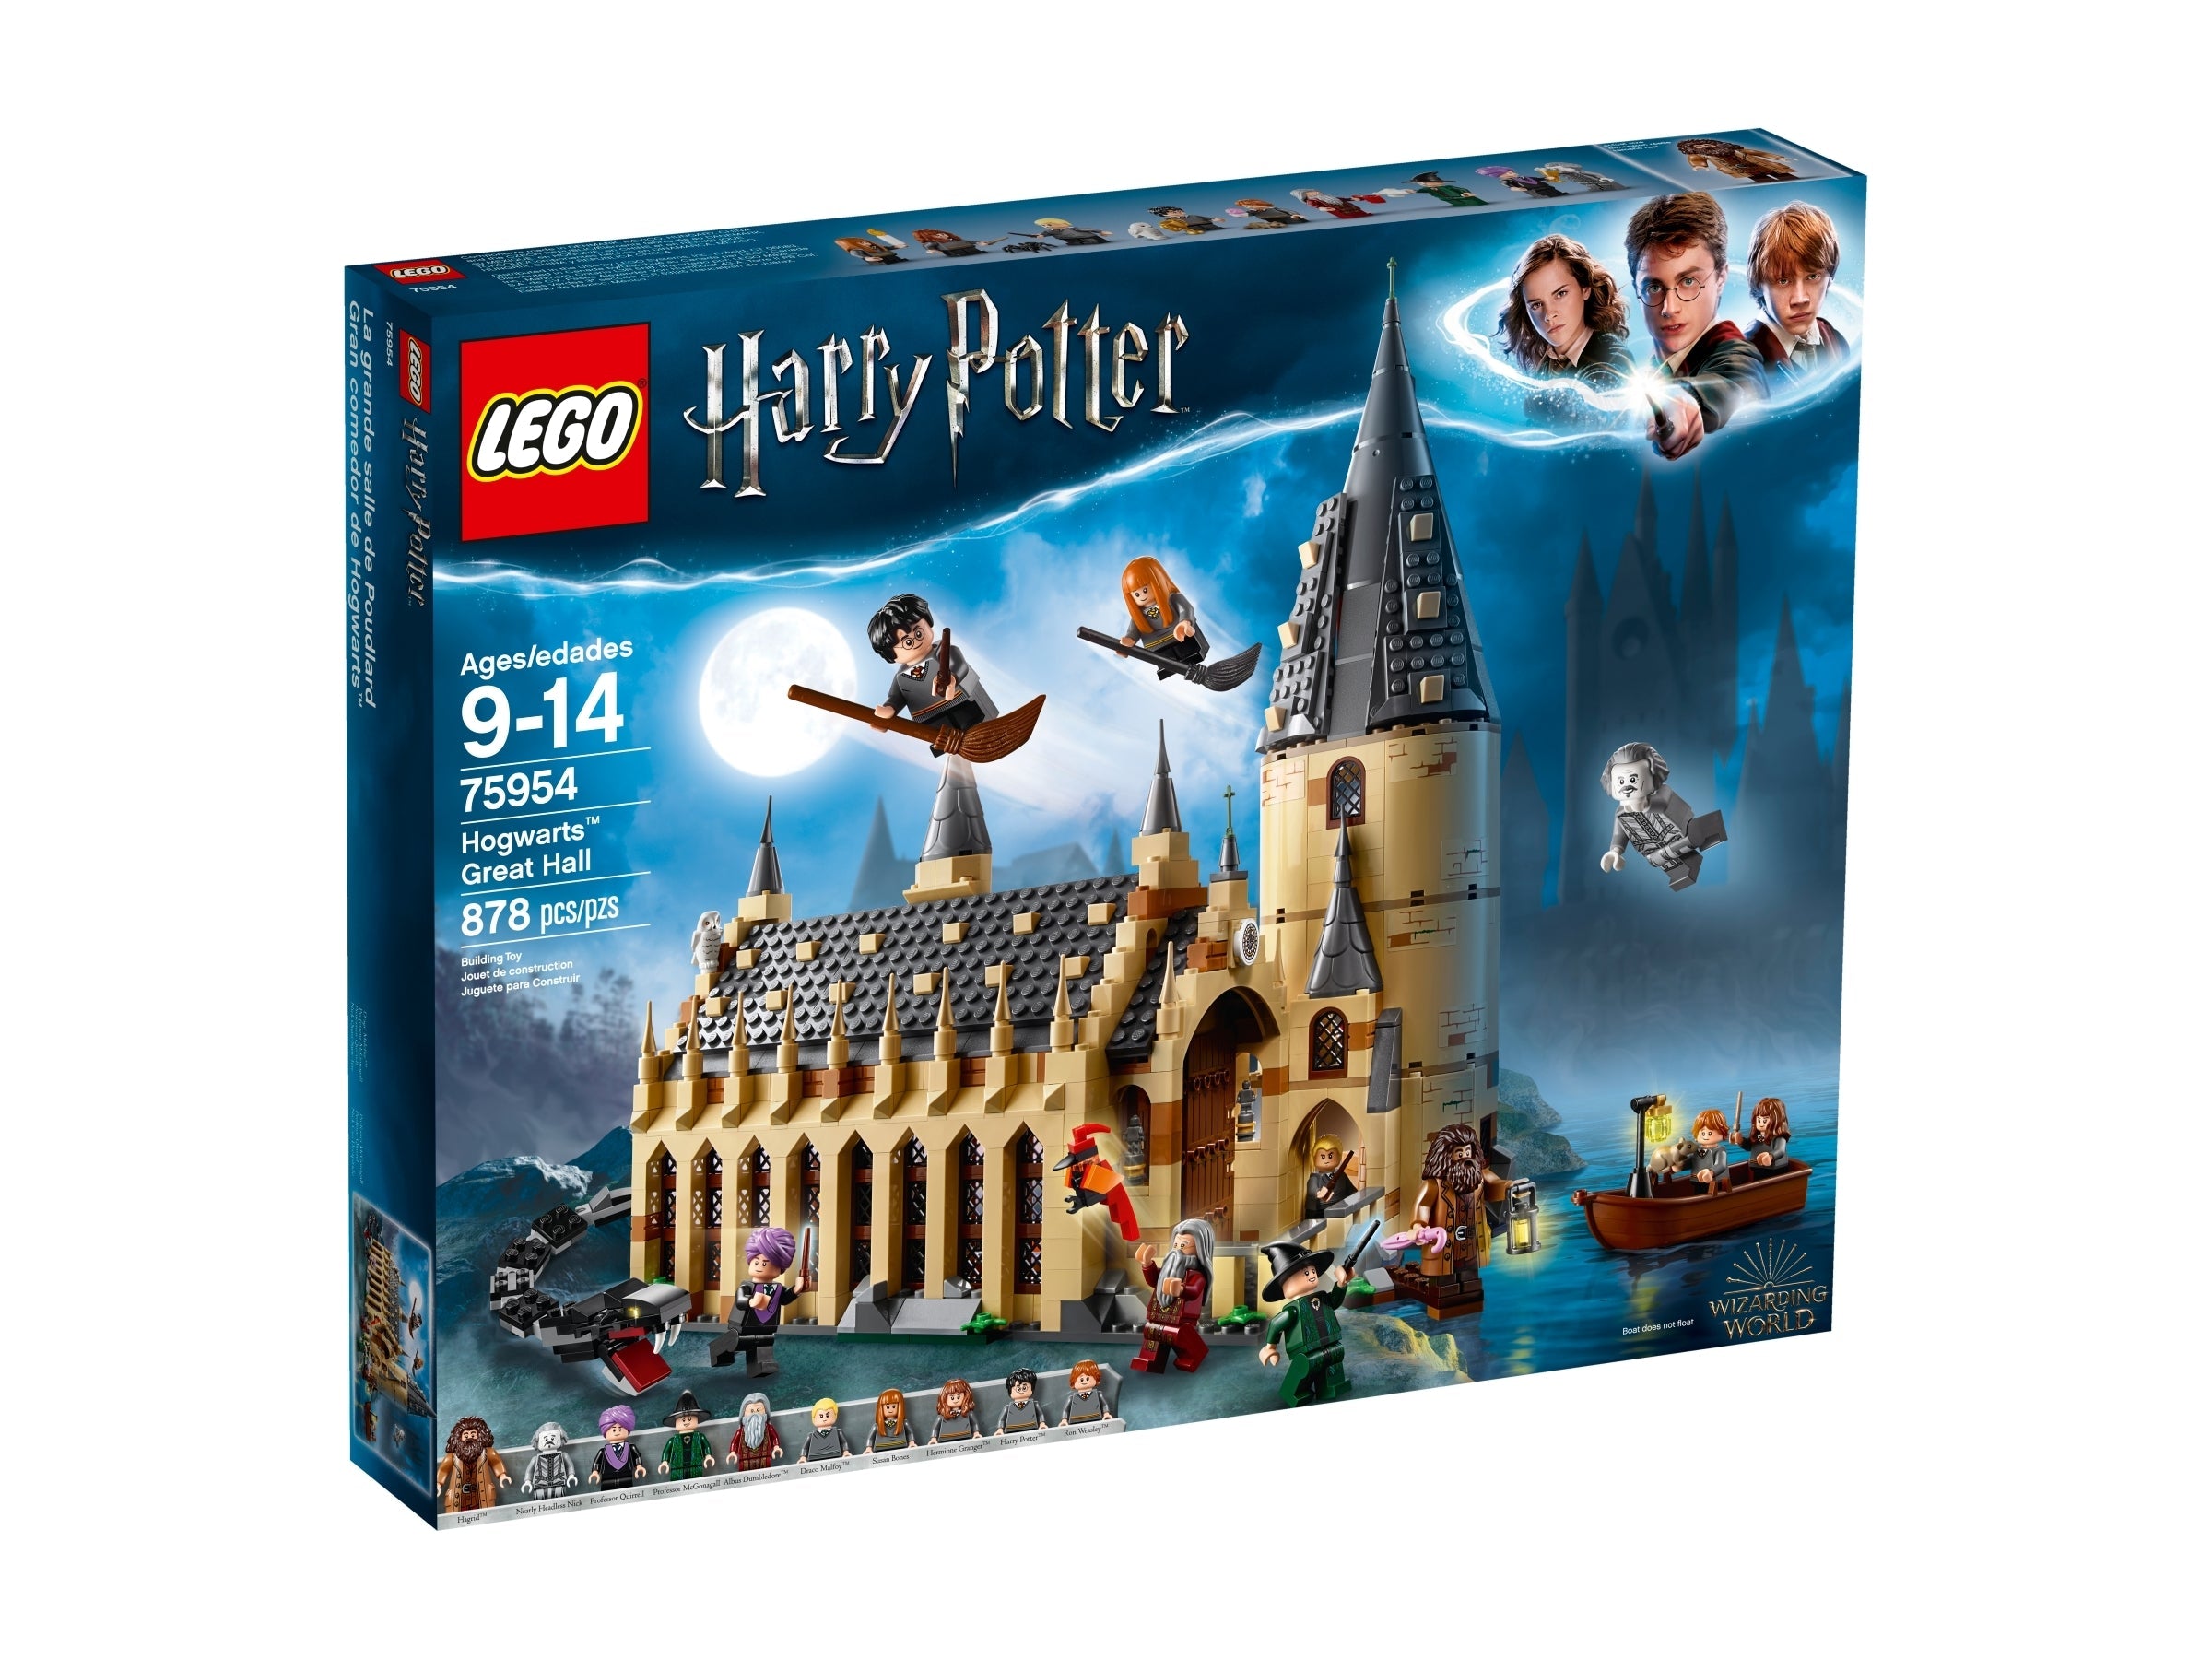 LEGO Harry Potter Die grosse Halle von Hogwarts (75954) - im GOLDSTIEN.SHOP verfügbar mit Gratisversand ab Schweizer Lager! (5702016110371)